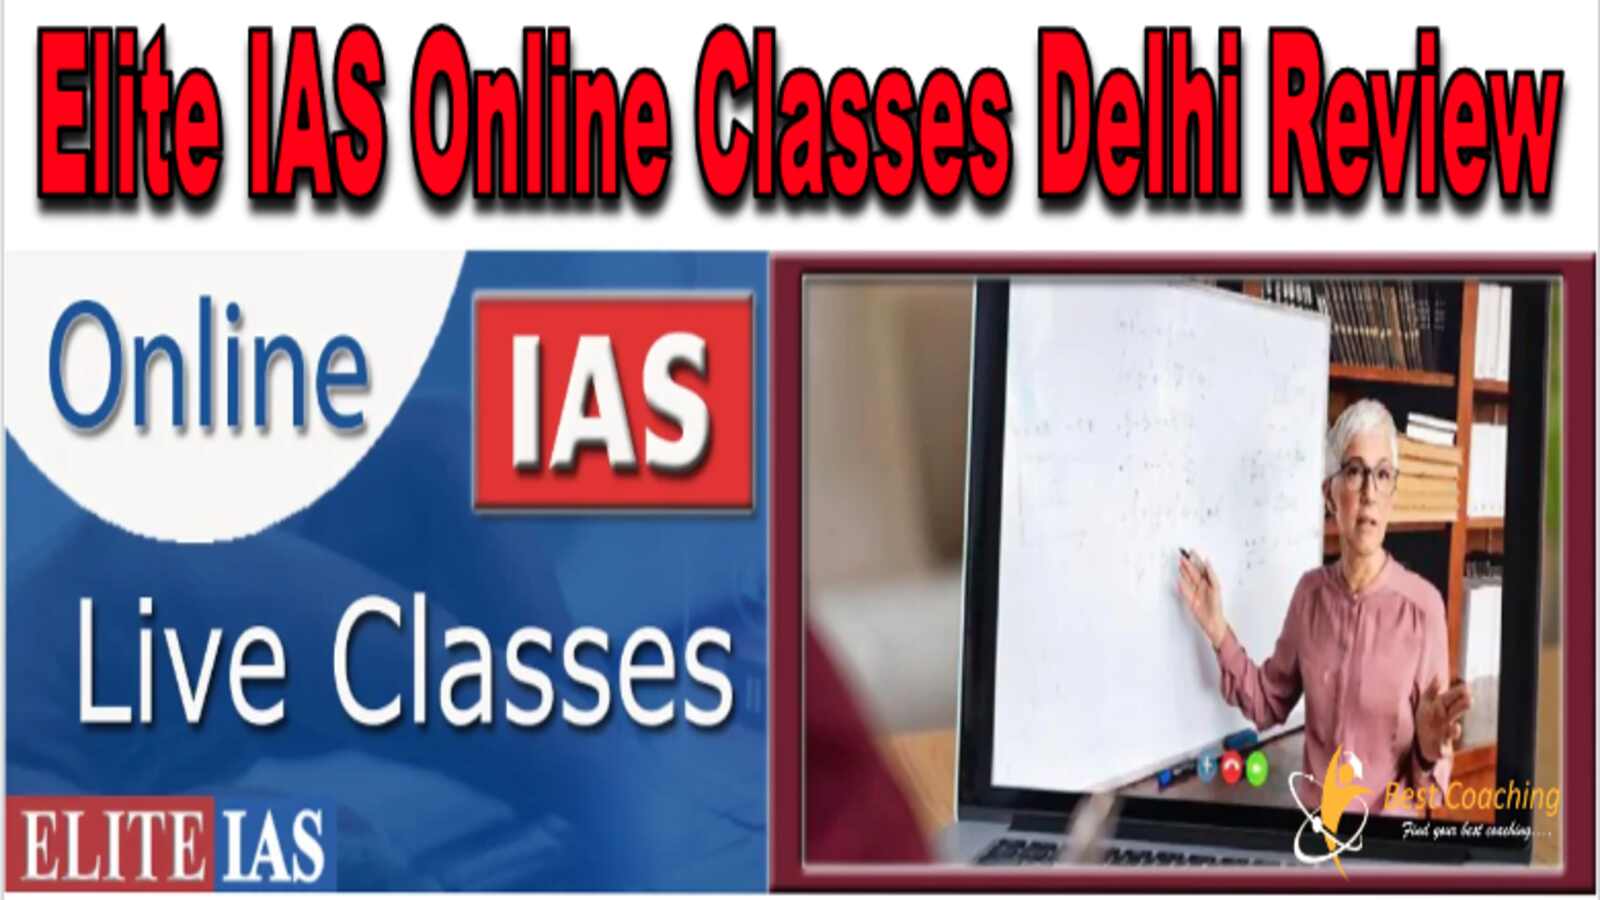 Elite IAS Online Classes Delhi Review